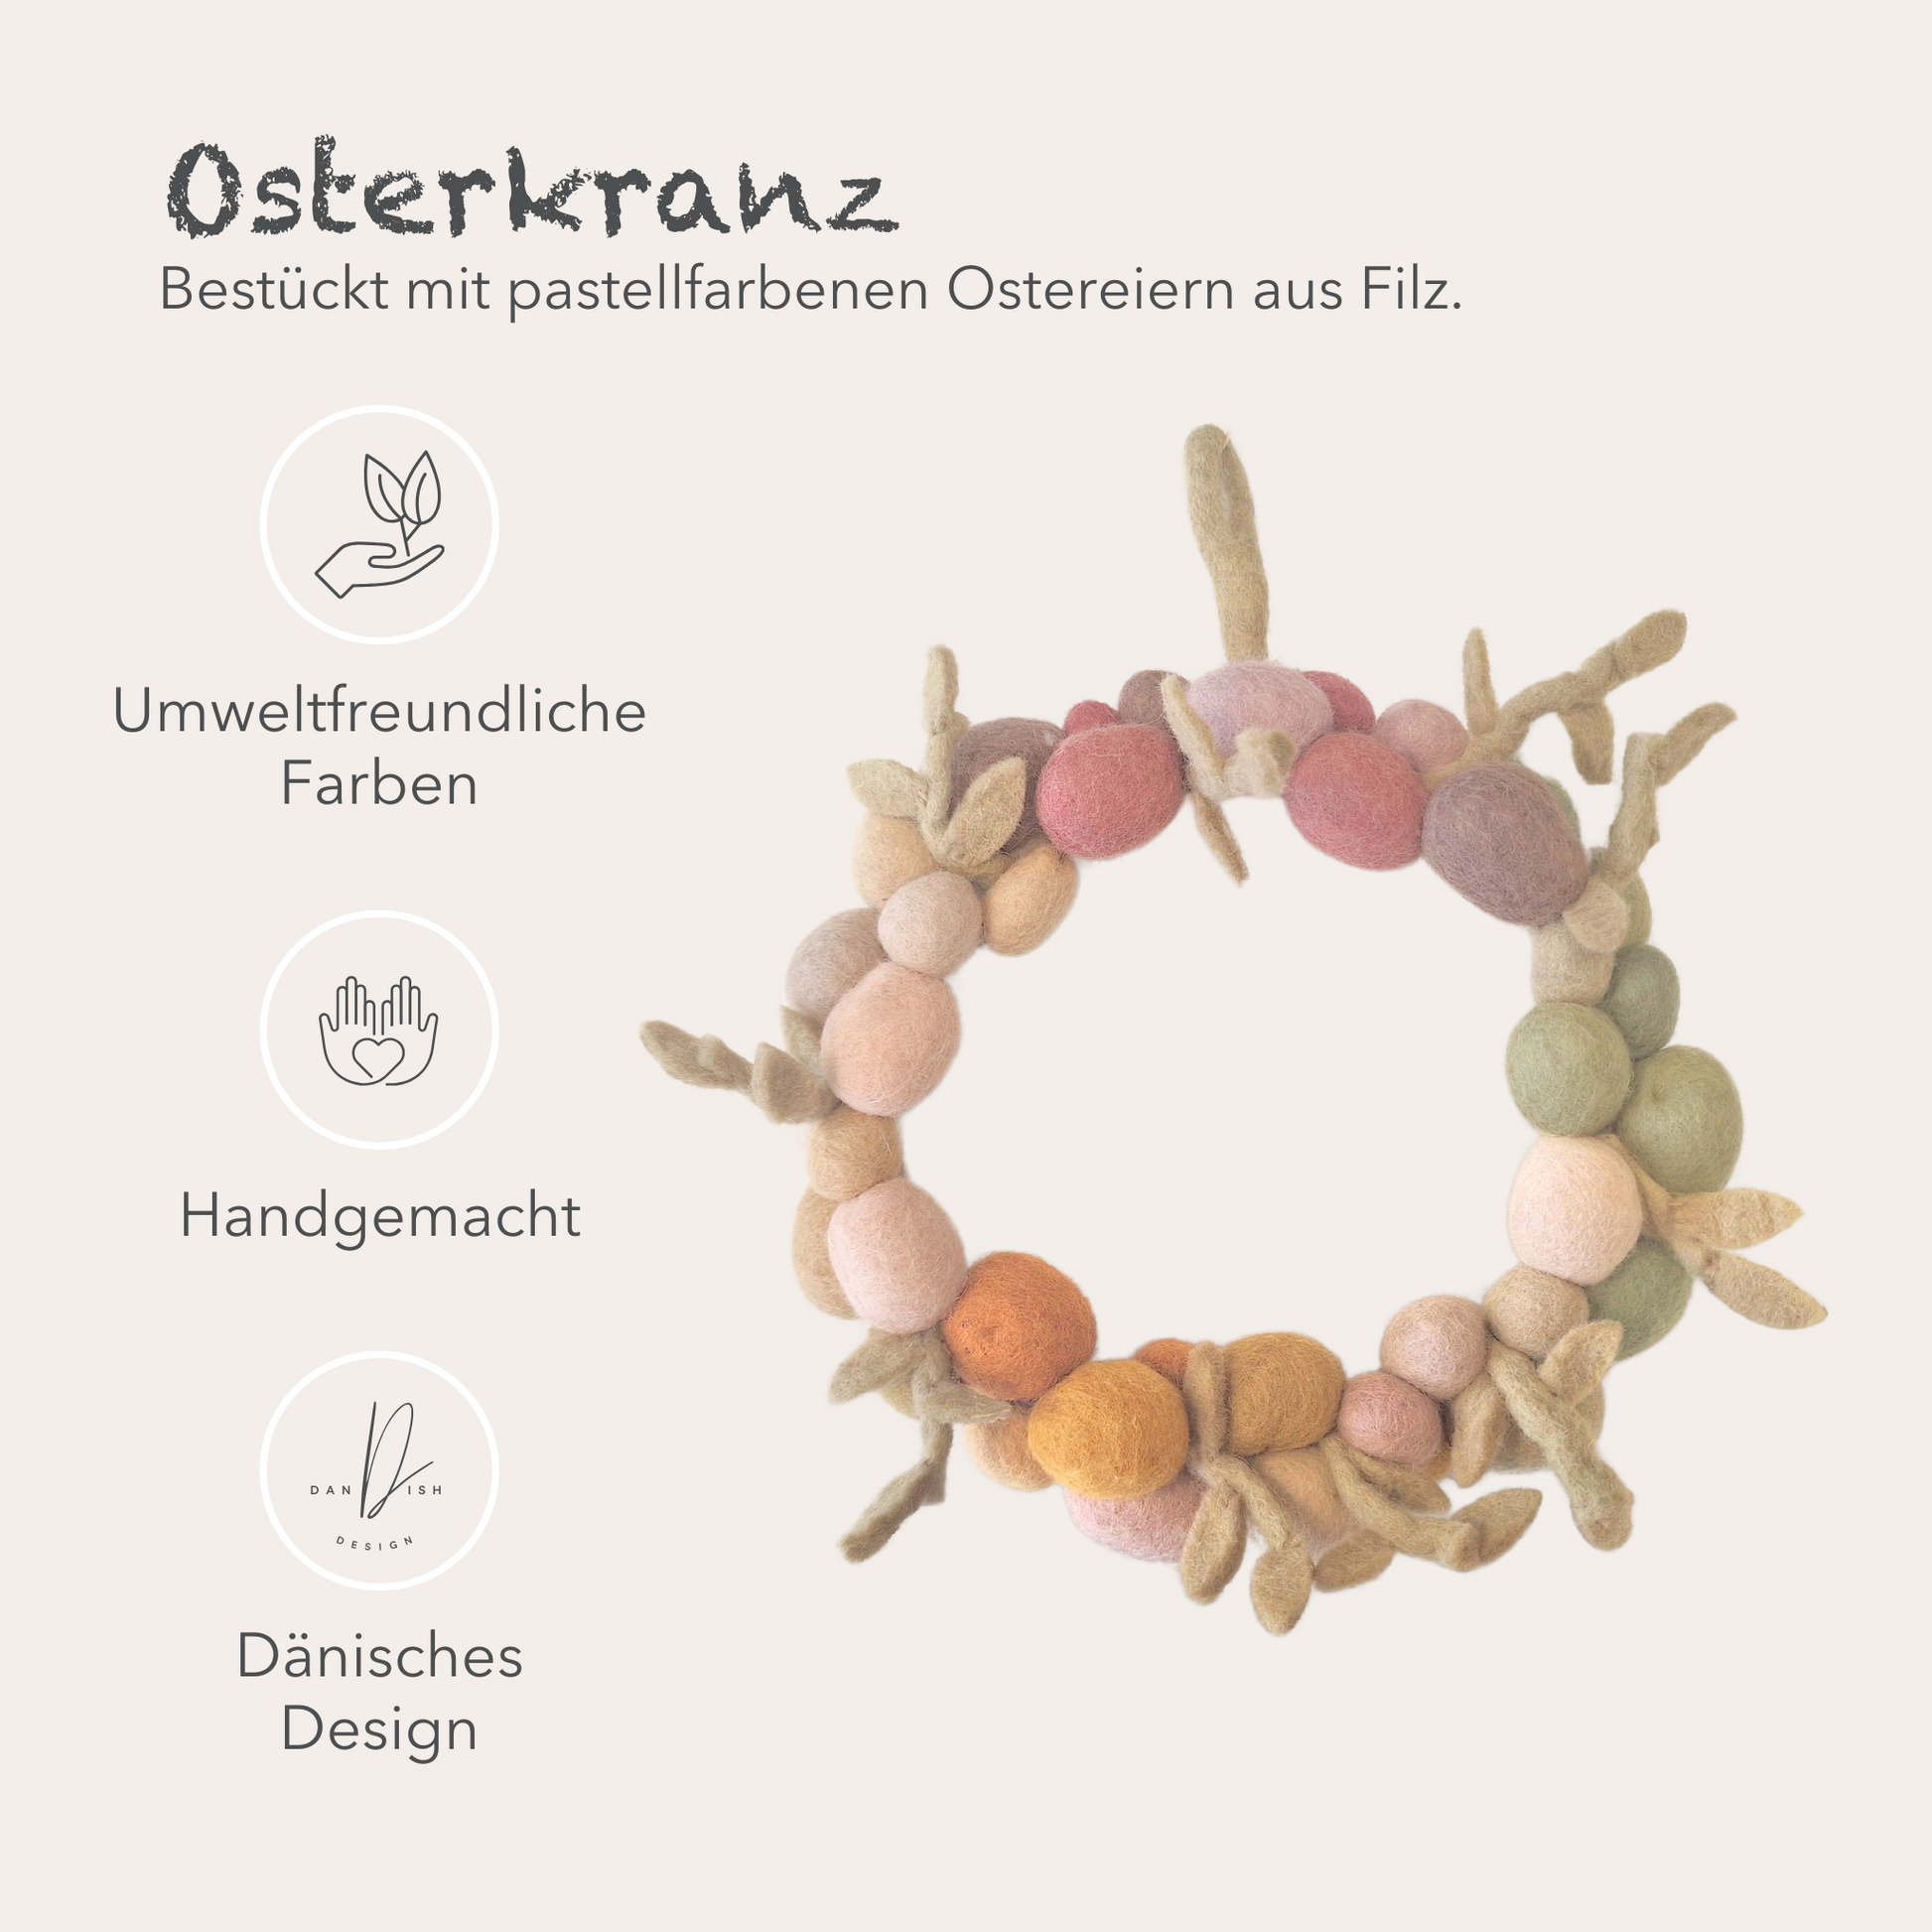 Mit pastellfarbenen Ostereiern bestückter Osterkranz, Umweltfreundliche Farben, Handgemacht und dänisches Design